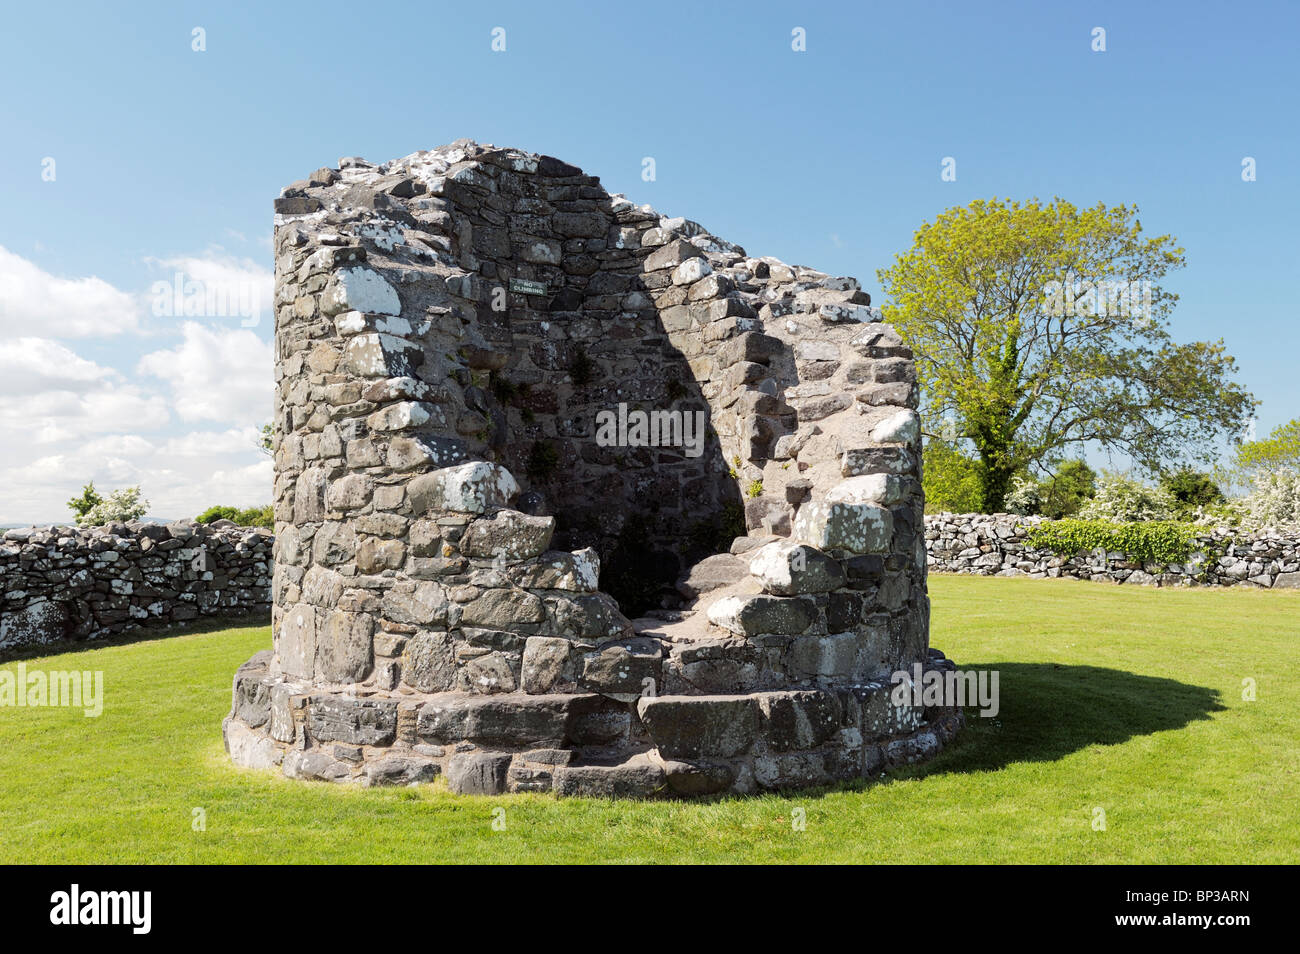 Il moncone della torre rotonda all'interno di massicce mura del monastero Nendrum, Isola Mahee, Strangford Lough, Co. Down, Irlanda del Nord Foto Stock